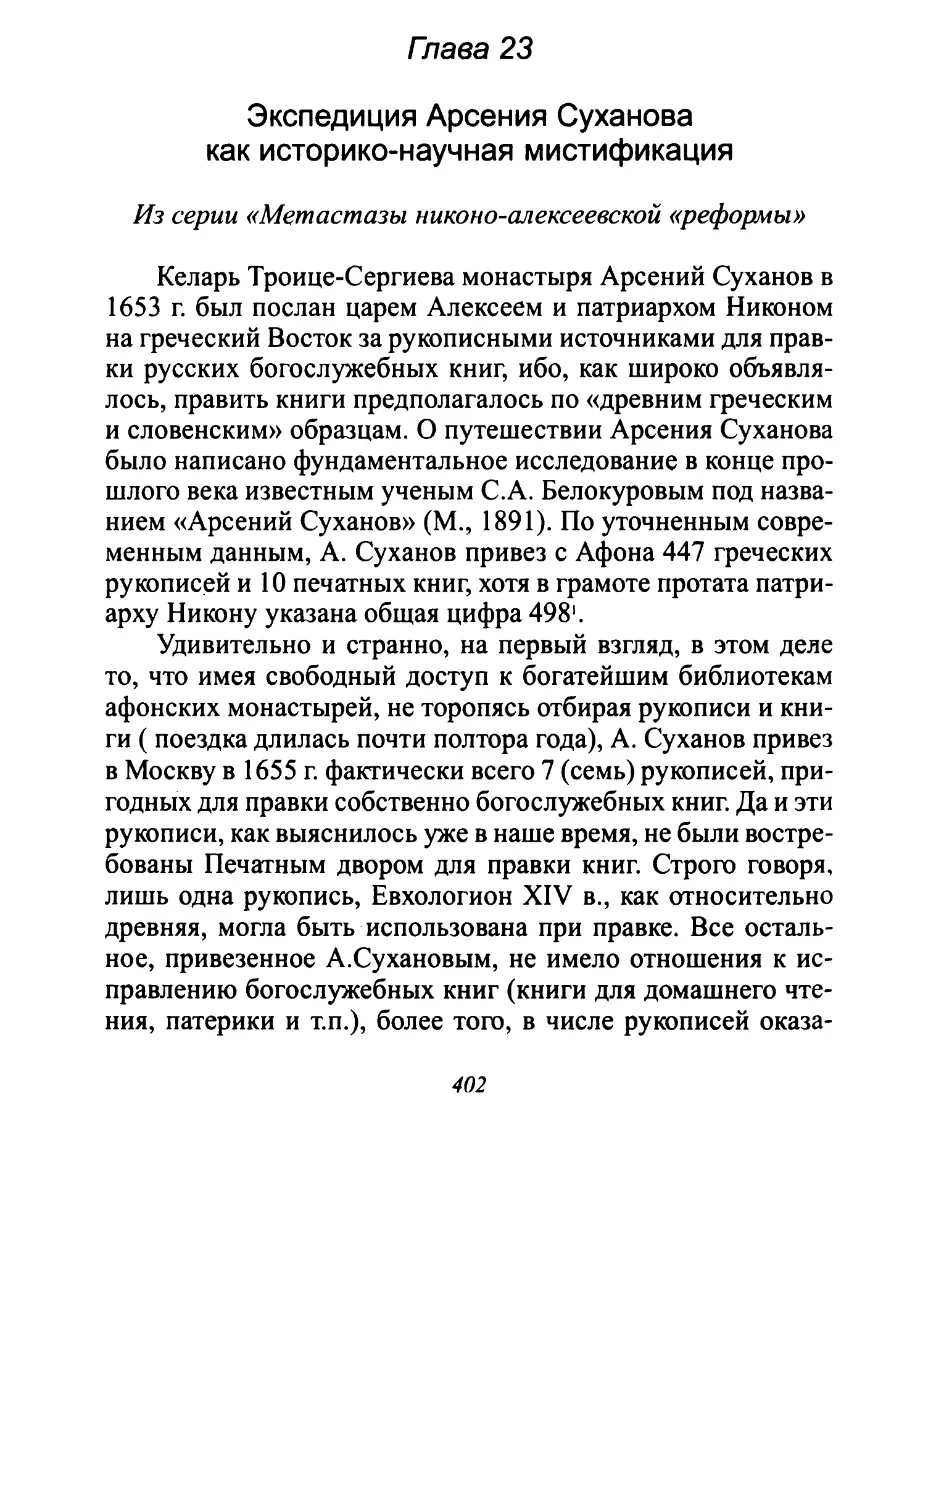 Глава 23. Экспедиция А.Суханова как историко-научная мистификация